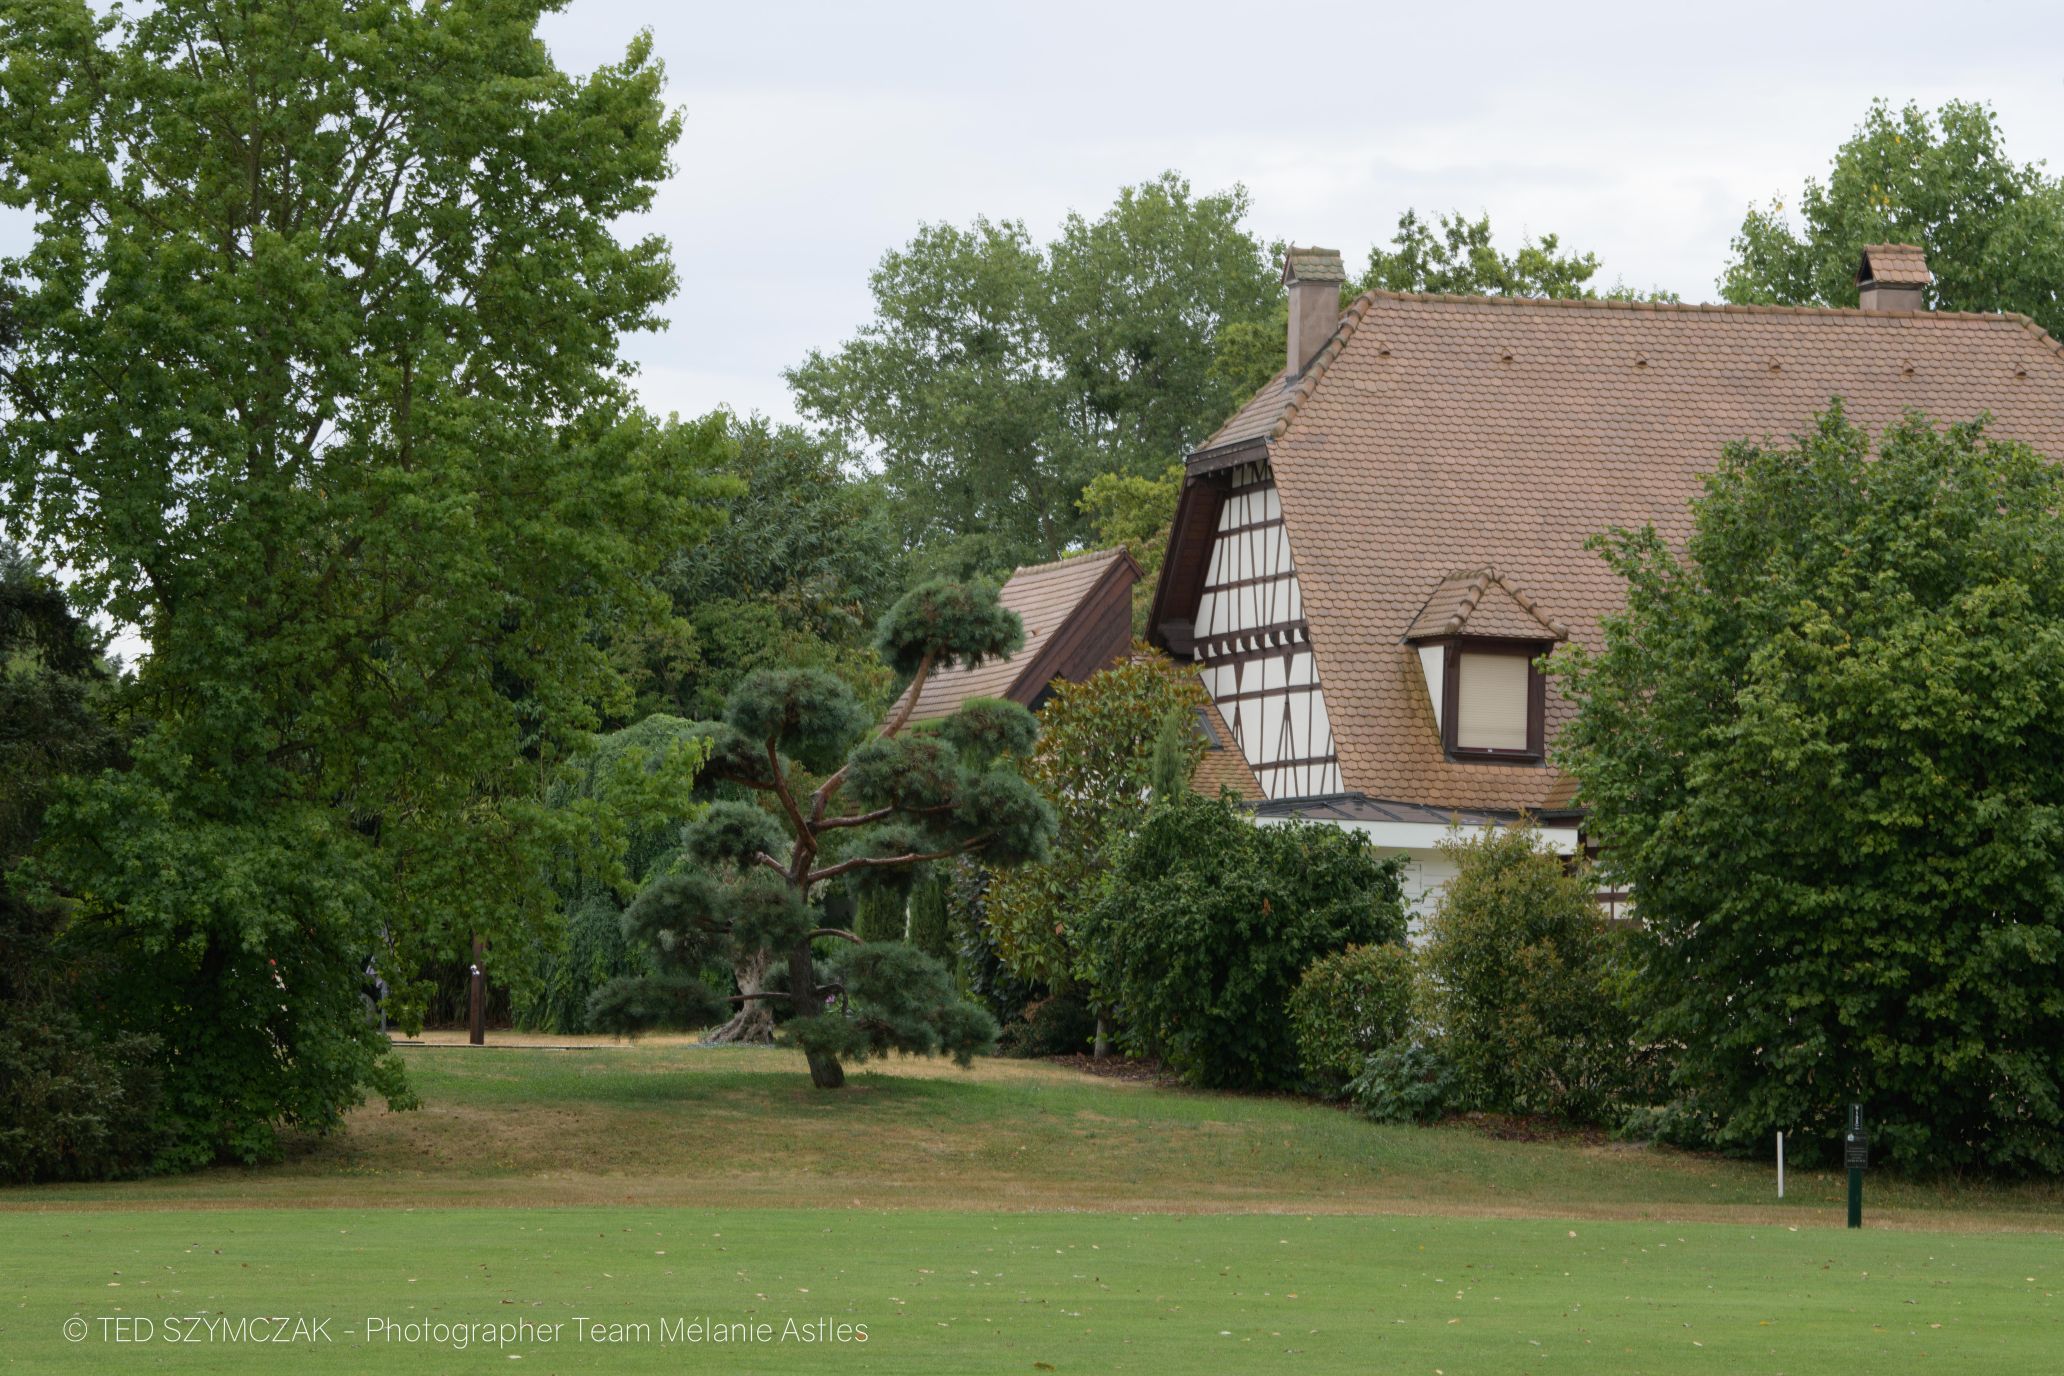 France - Strasbourg - Golf - trophée des Personnalités